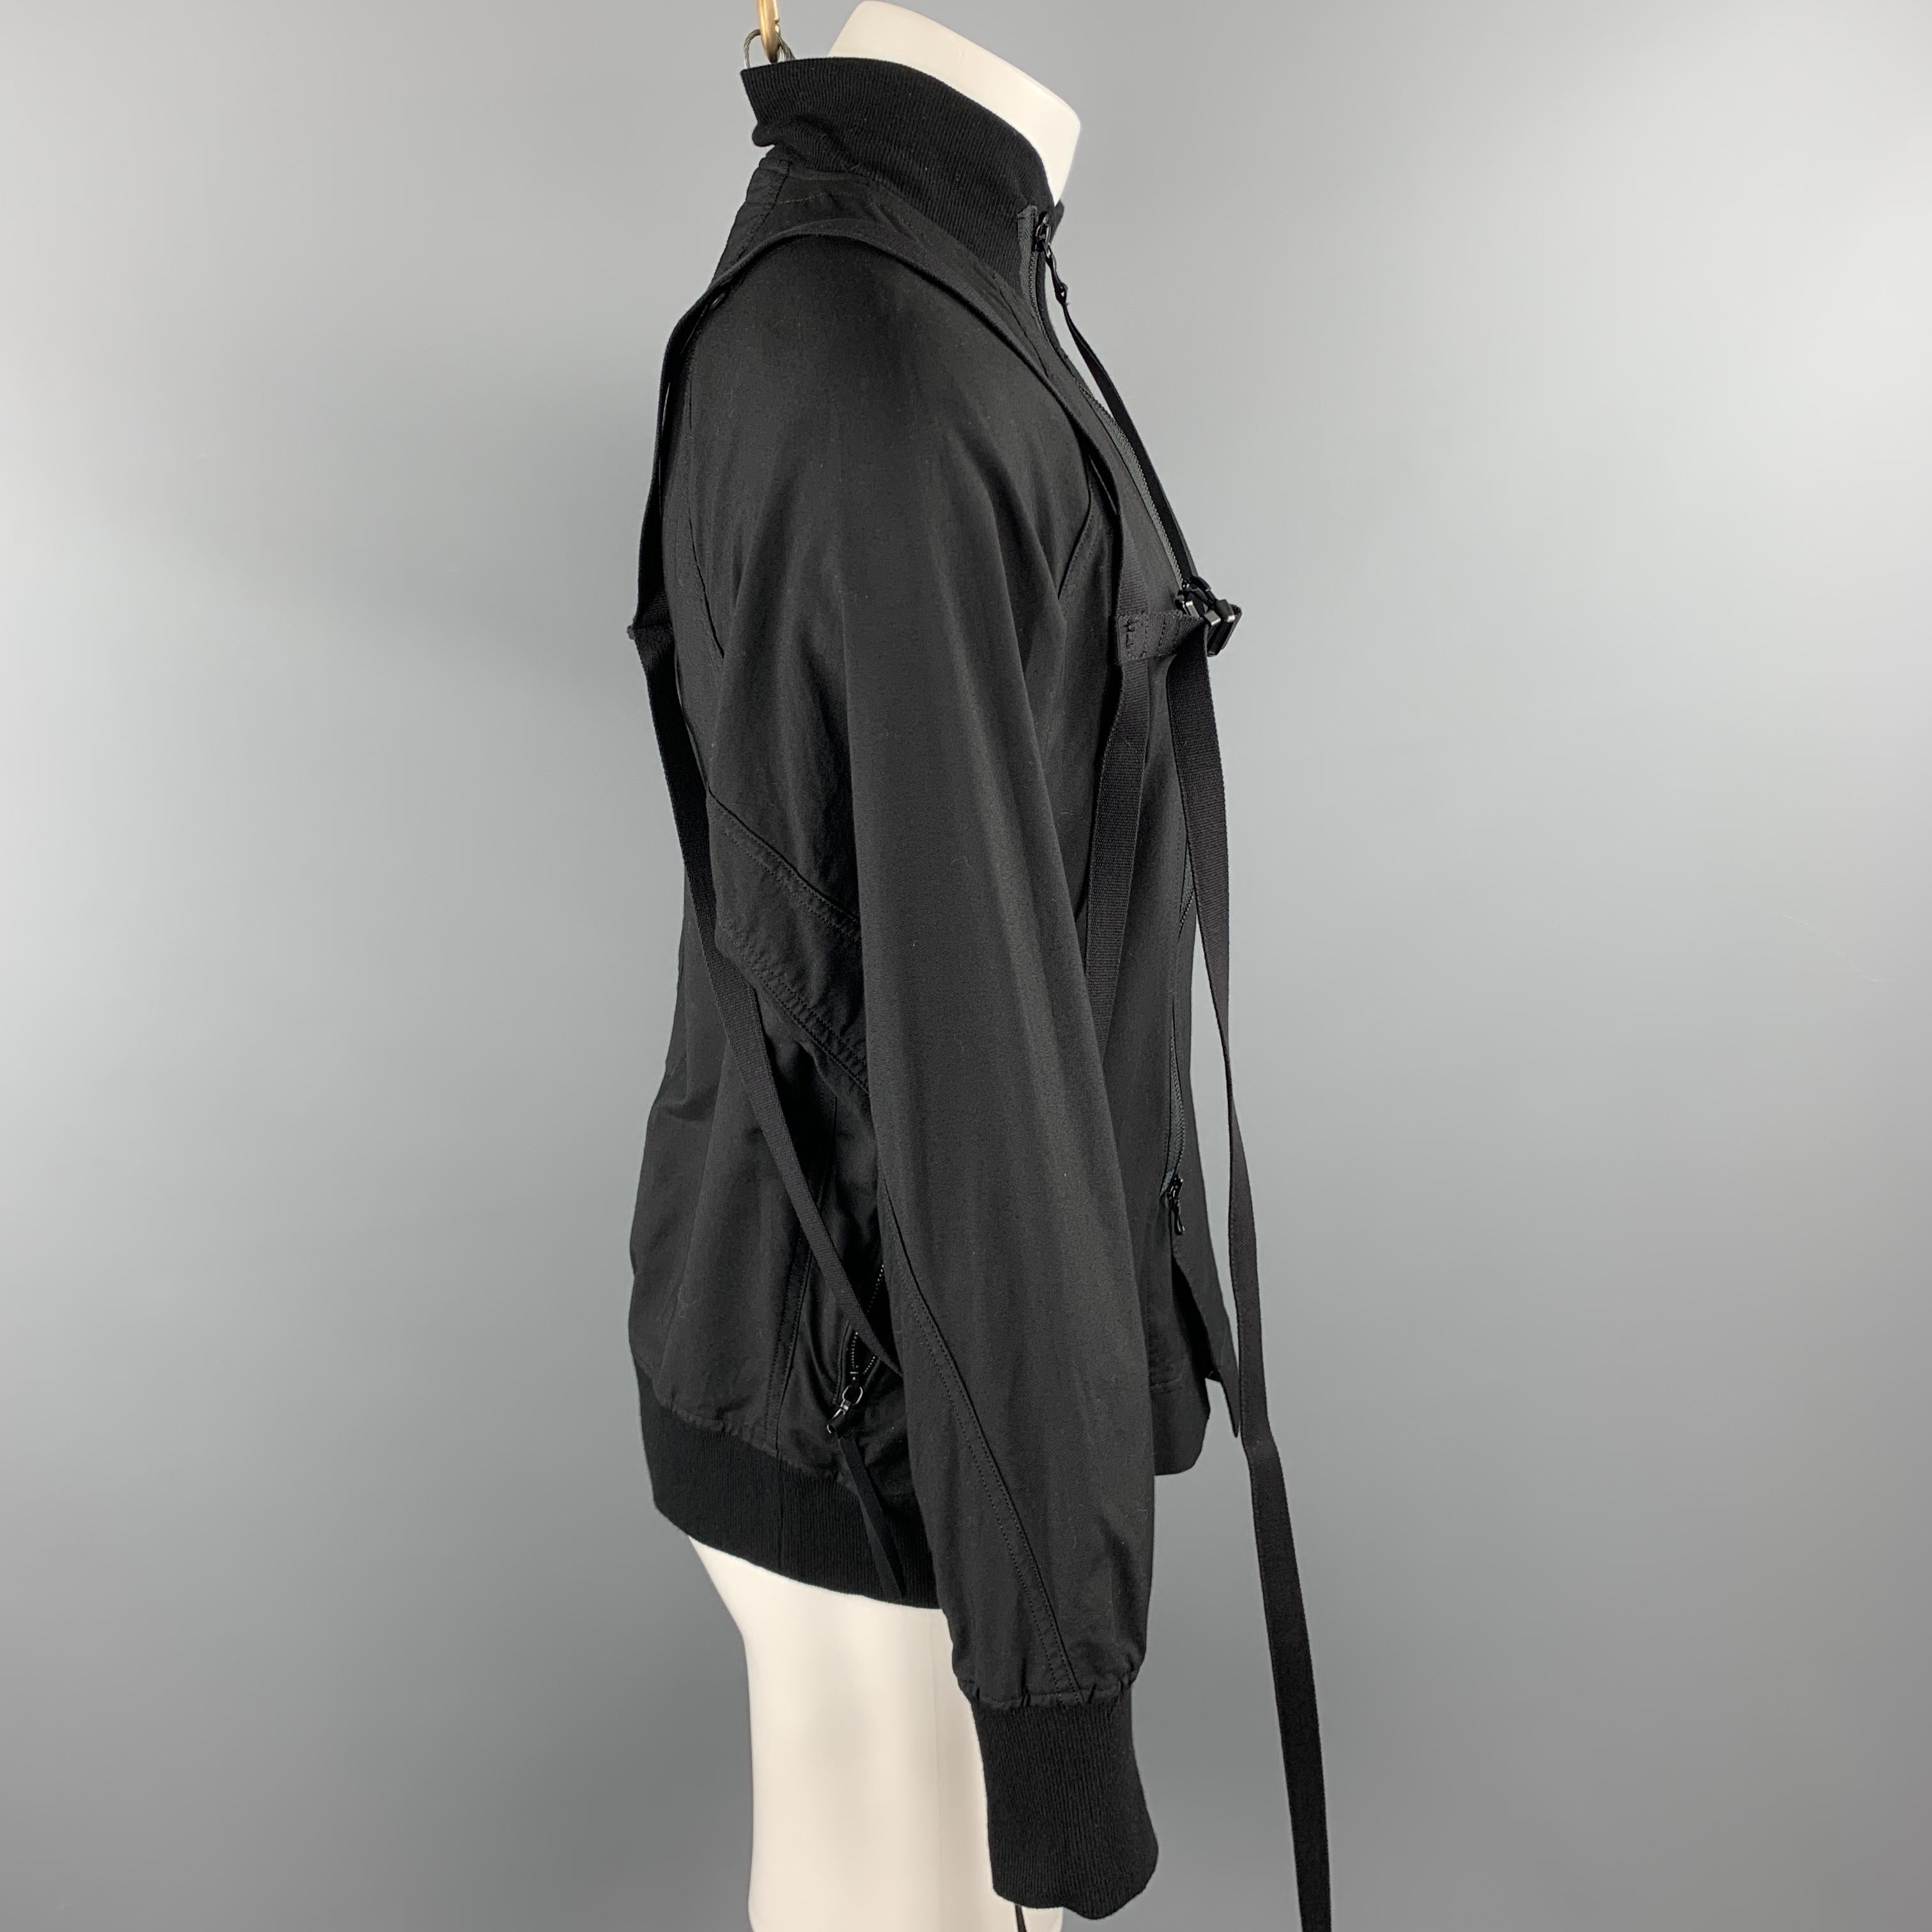 JULIUS_7 S/S 18 Size M Black Cotton / Nylon Zip Up A81 Harness Jacket 1